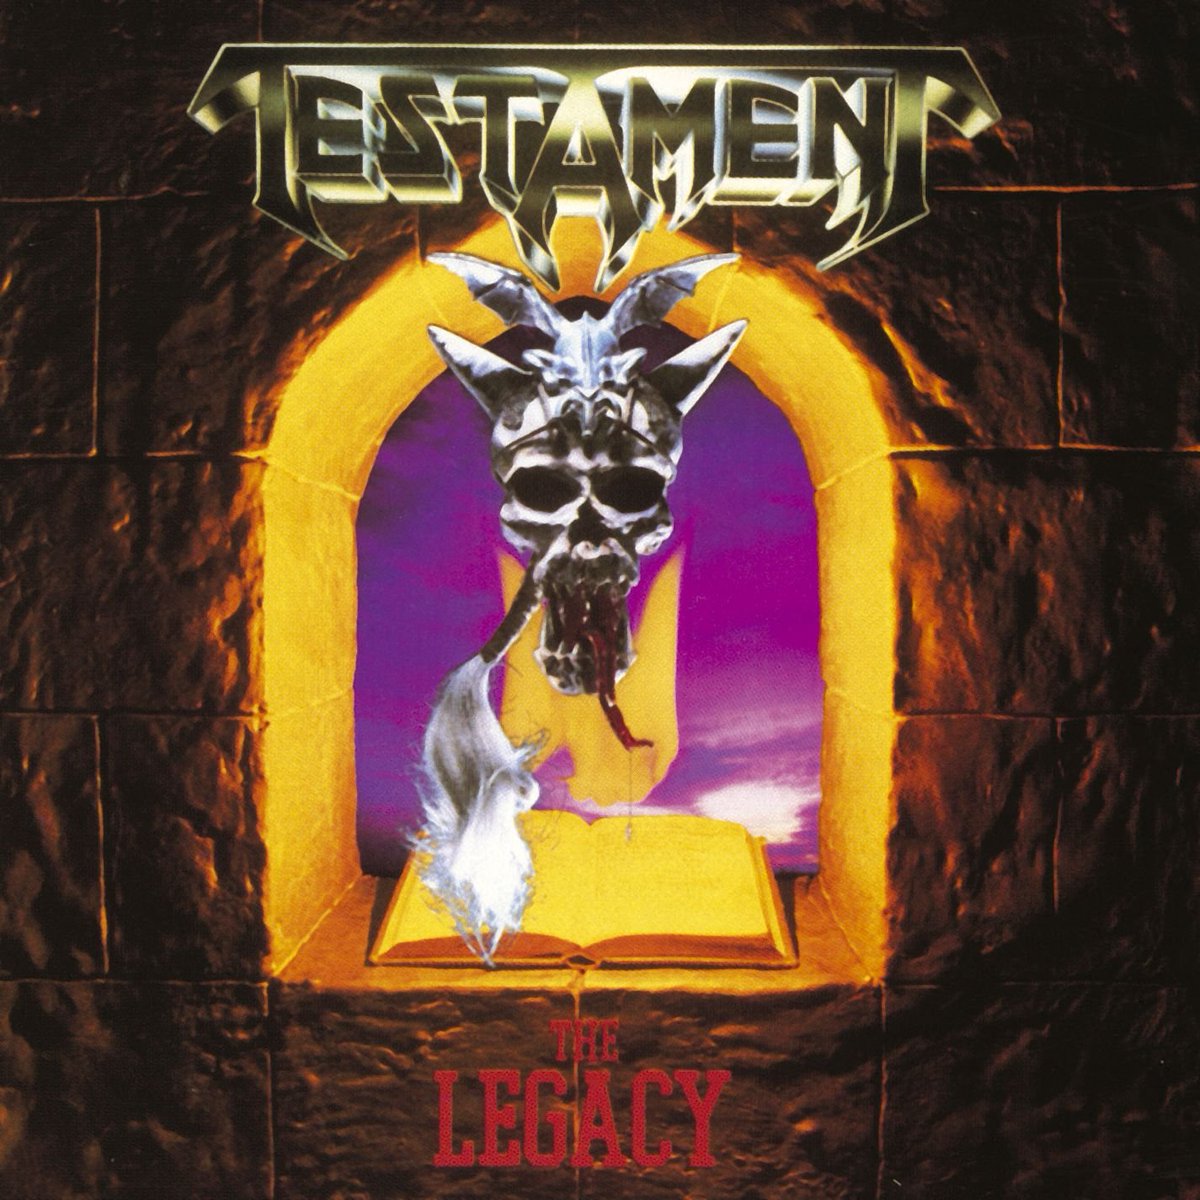 El 21 de Abril de 1987, hace 37 años, Testament lanzaba su primer álbum de estudio 'The Legacy' #Efemeride #21Abr #Testament #TheLegacy spotify.link/eAyL4hWLazb